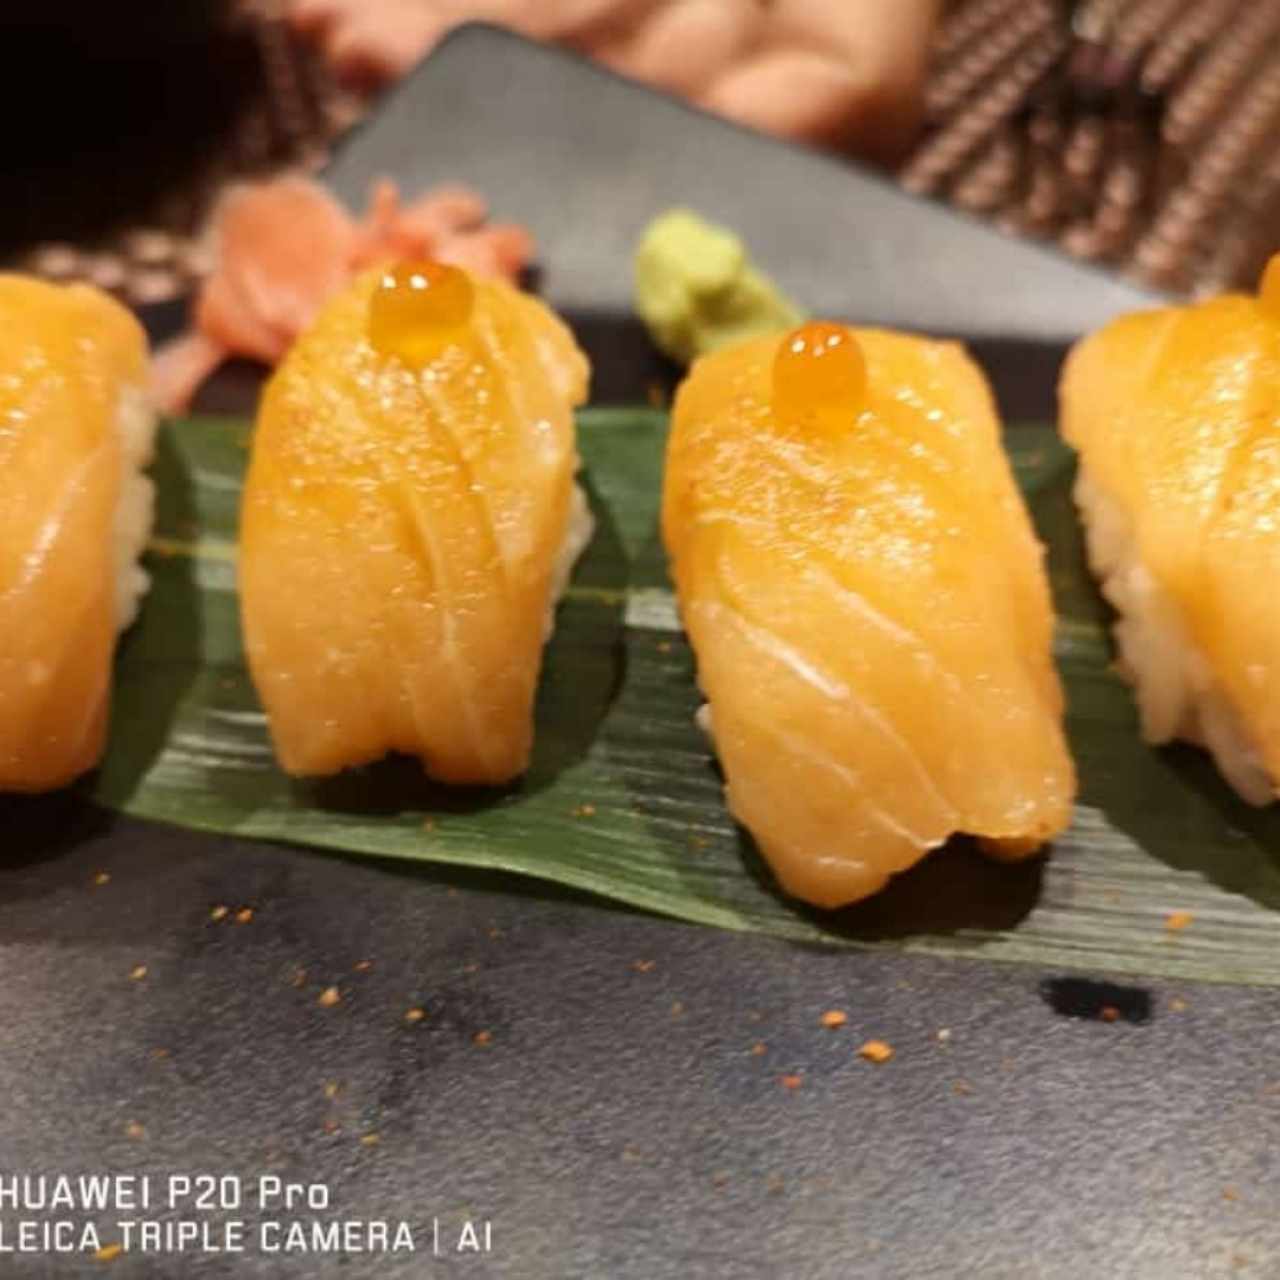 Sashimi salmón 